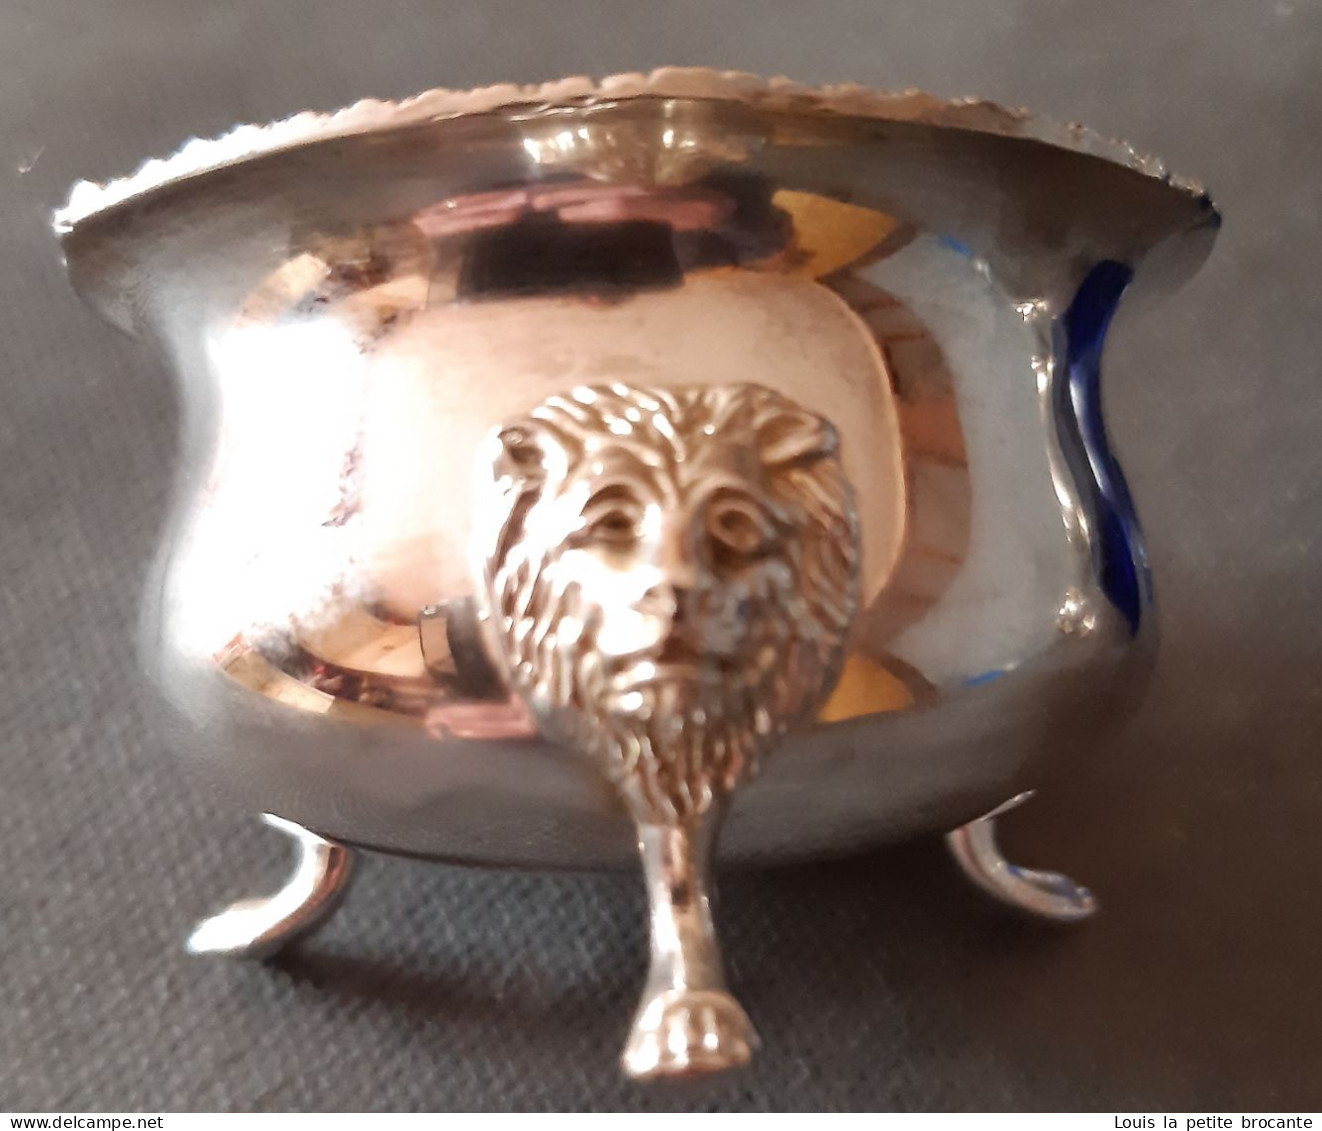 Lot de 3 petits pots à épices de table,  en métal argenté  avec bol en verre bleu.